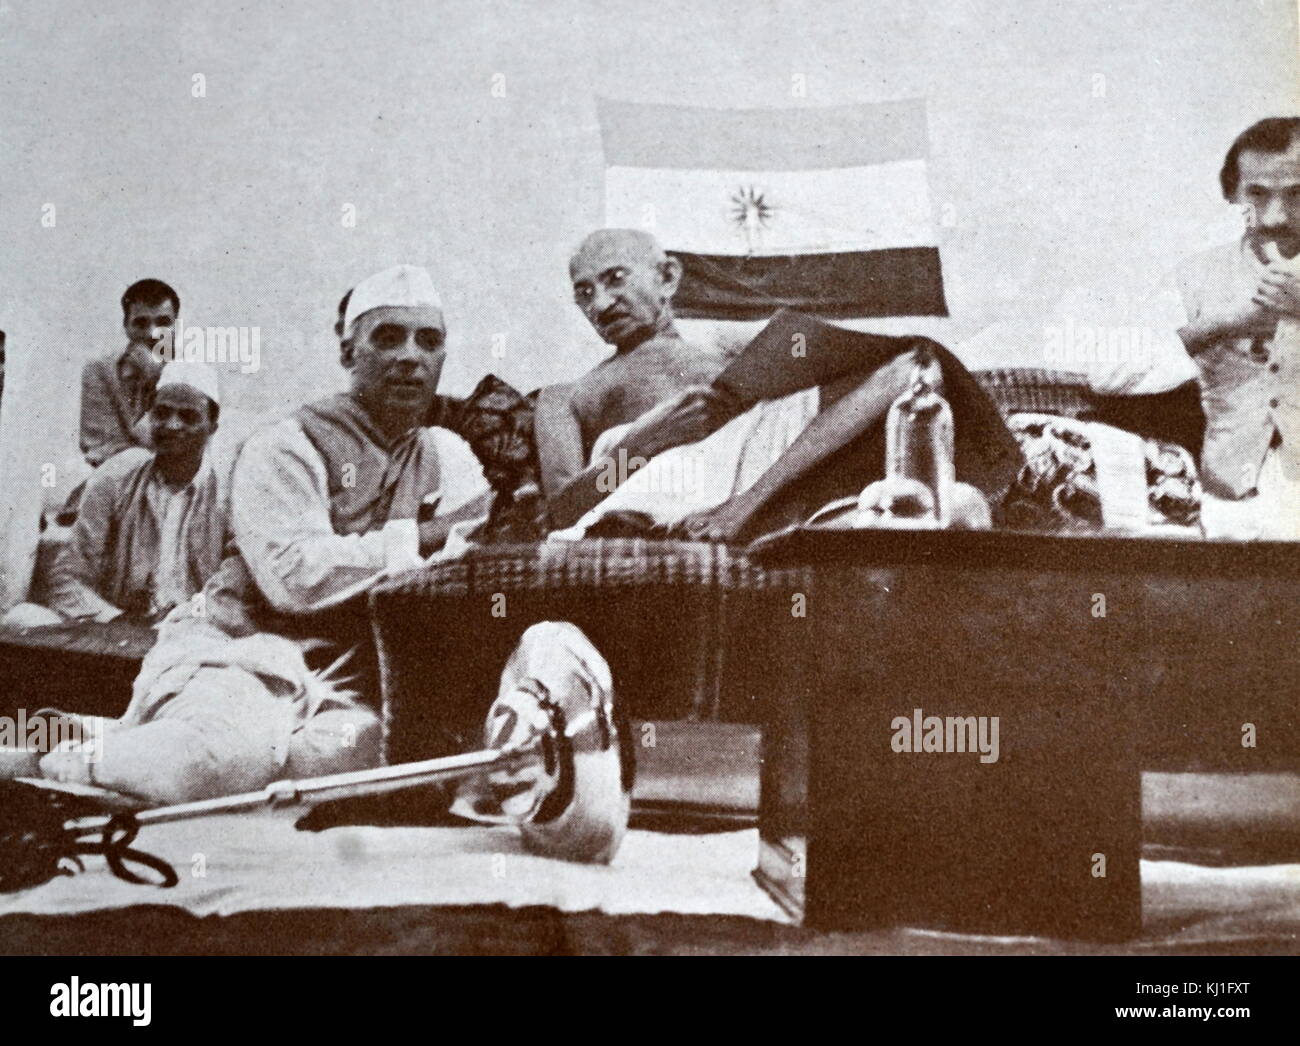 Mohandas Karamchand Gandhi (1869 - 1948) lors d'une réunion avec Jawaharlal Nehru (à gauche) et Jivatram Kripalani (droite), 1940. Gandhi a été le principal chef de l'indépendance de l'Inde en mouvement a décidé de l'Inde. Jivatram Bhagwandas Kripalani (1888 - 1982), connu sous le nom de l'Acharya Kripalani, était un homme politique indien. Nehru (1889 -1964) était un chef de Congrès national indien au cours de l'indépendance de l'Inde mouvement. Plus tard, il est devenu Premier Ministre Banque D'Images